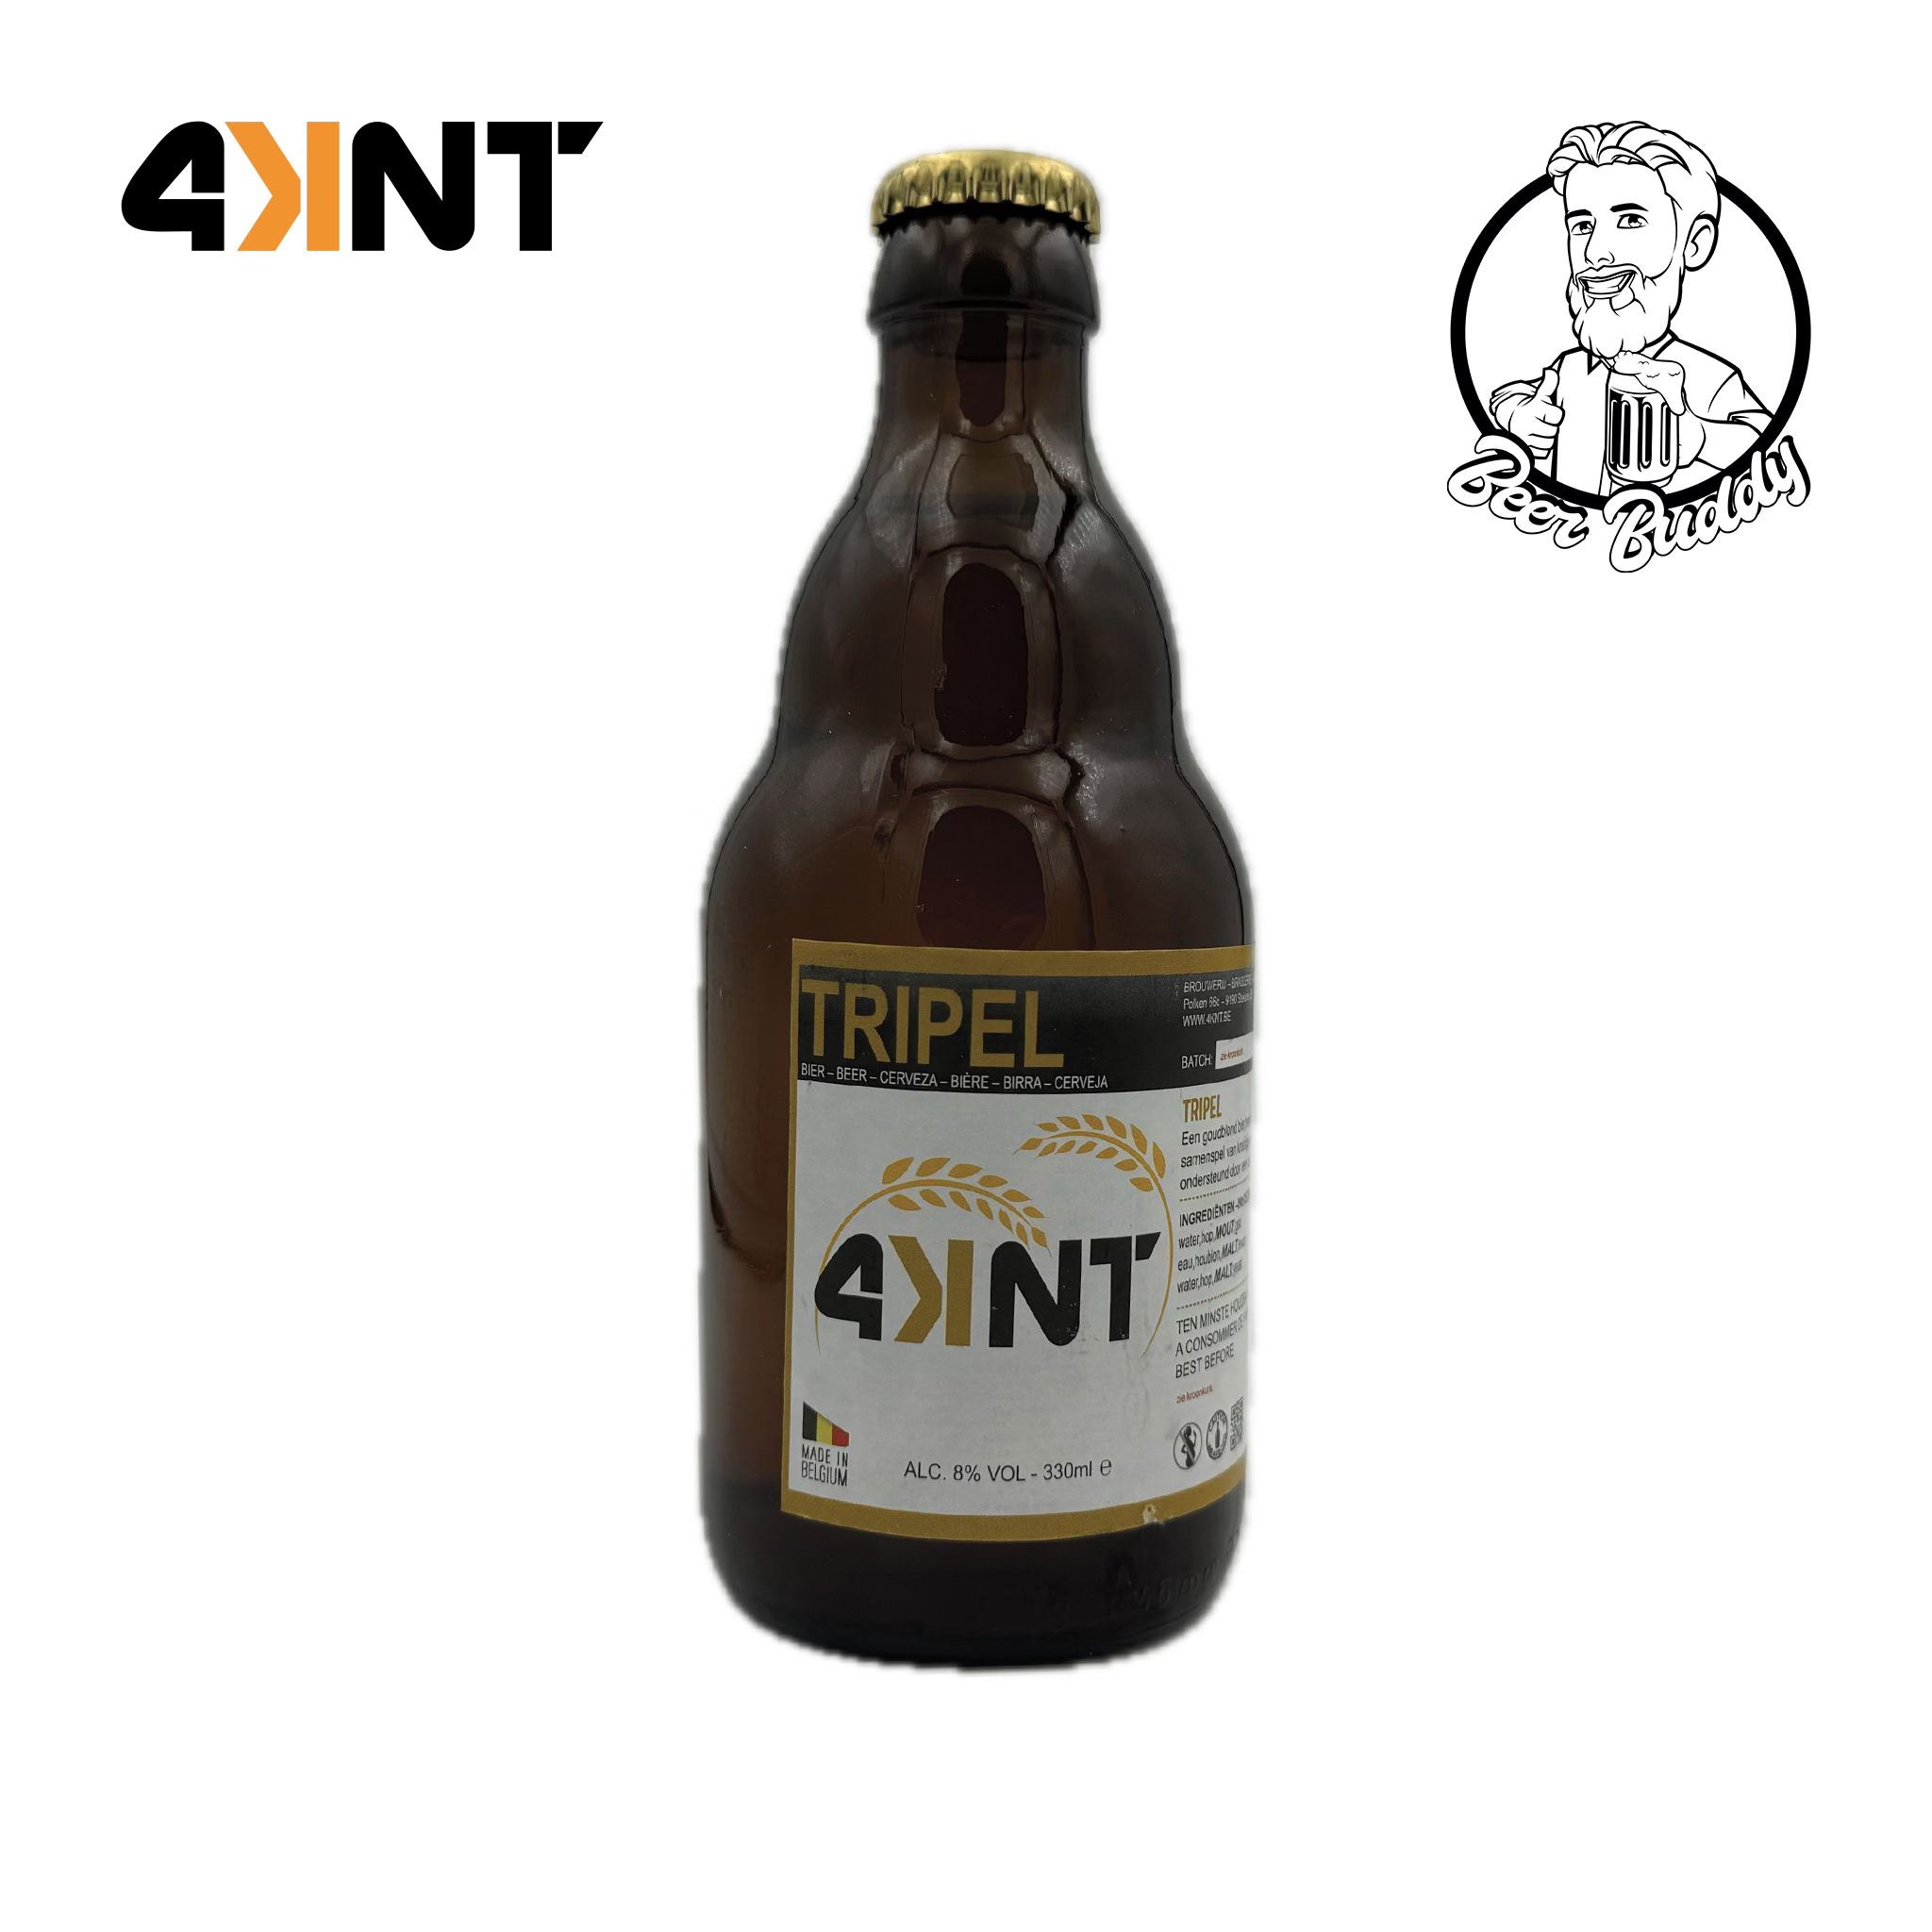 Een bruine glazen fles Brouwerij 4KNT Tripel-bier met een gouden dop, voorzien van een etiket met het merklogo 'Tripel' en een beschrijving in meerdere talen. Het goudblond bier heeft kruidige en fruitige smaken, met een alcoholpercentage van 8% en een inhoud van 330 ml.